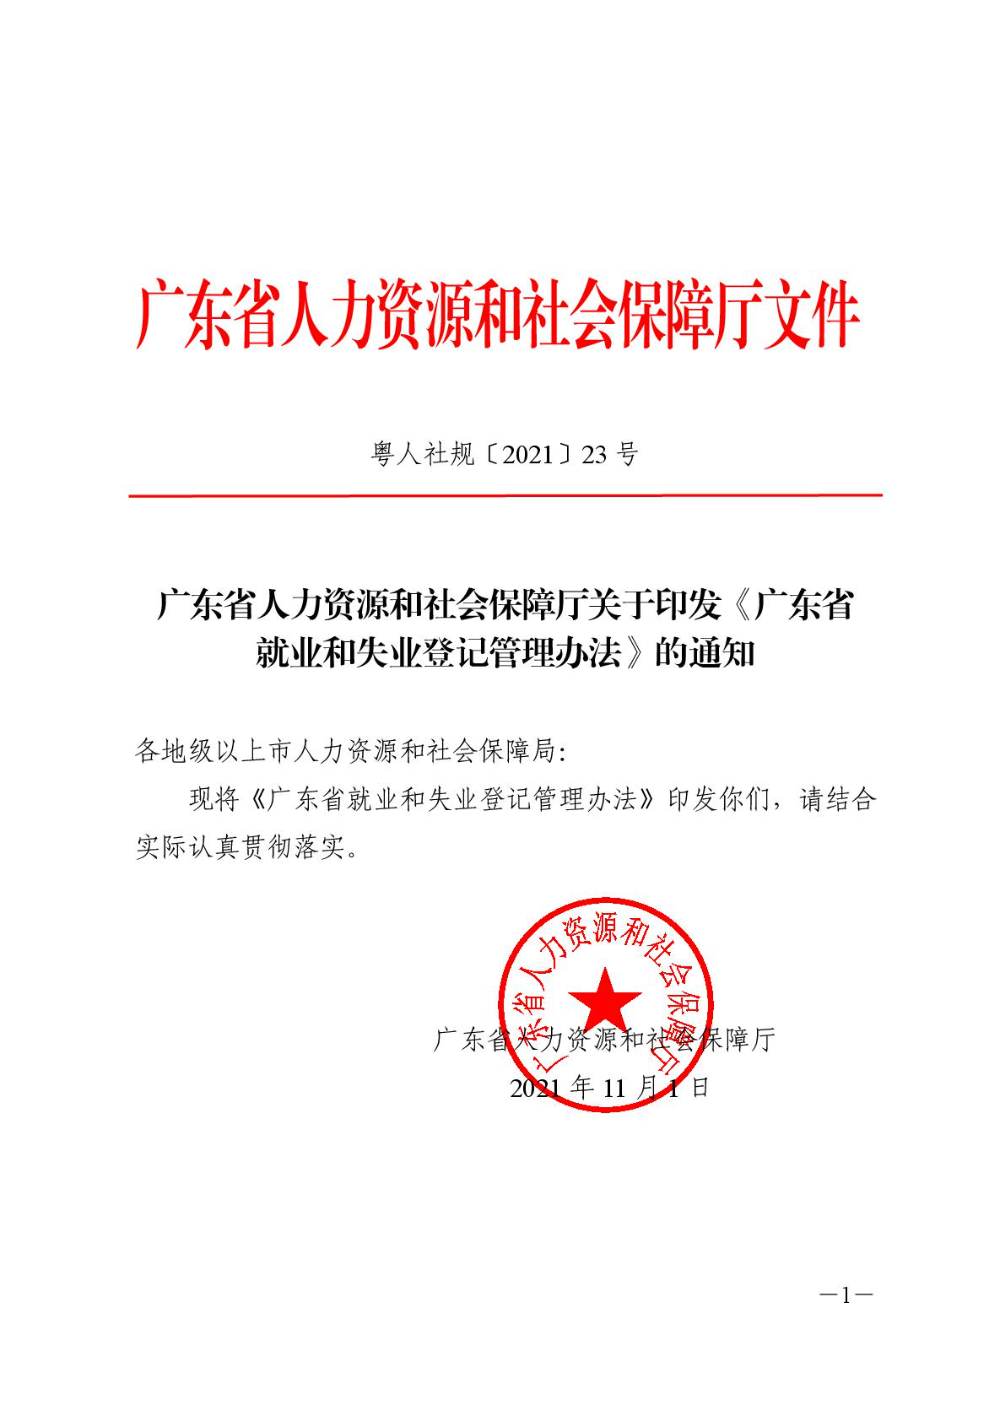 广东省人力资源和社会保障厅关于印发《广东省就业和失业登记管理办法》的通知-001.jpg